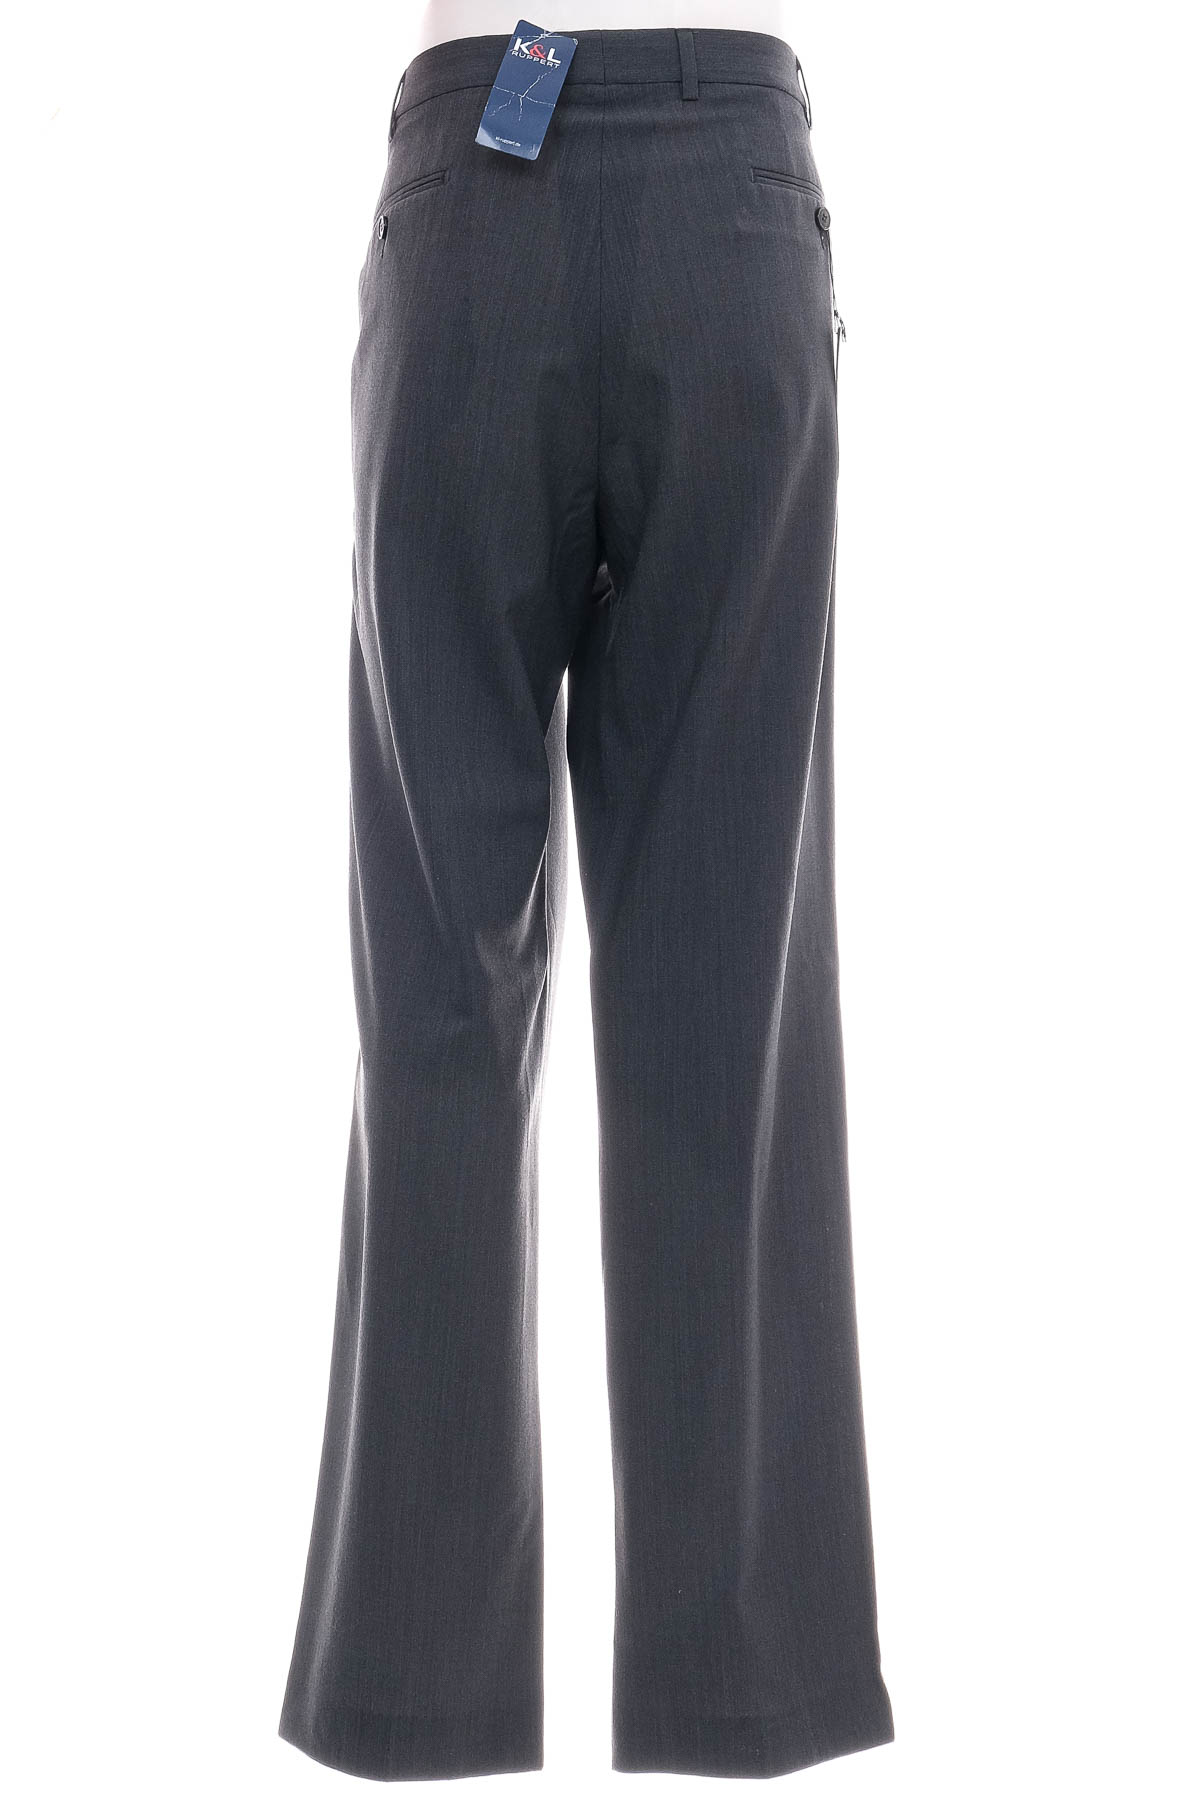 Pantalon pentru bărbați - K&L RUPPERT - 1